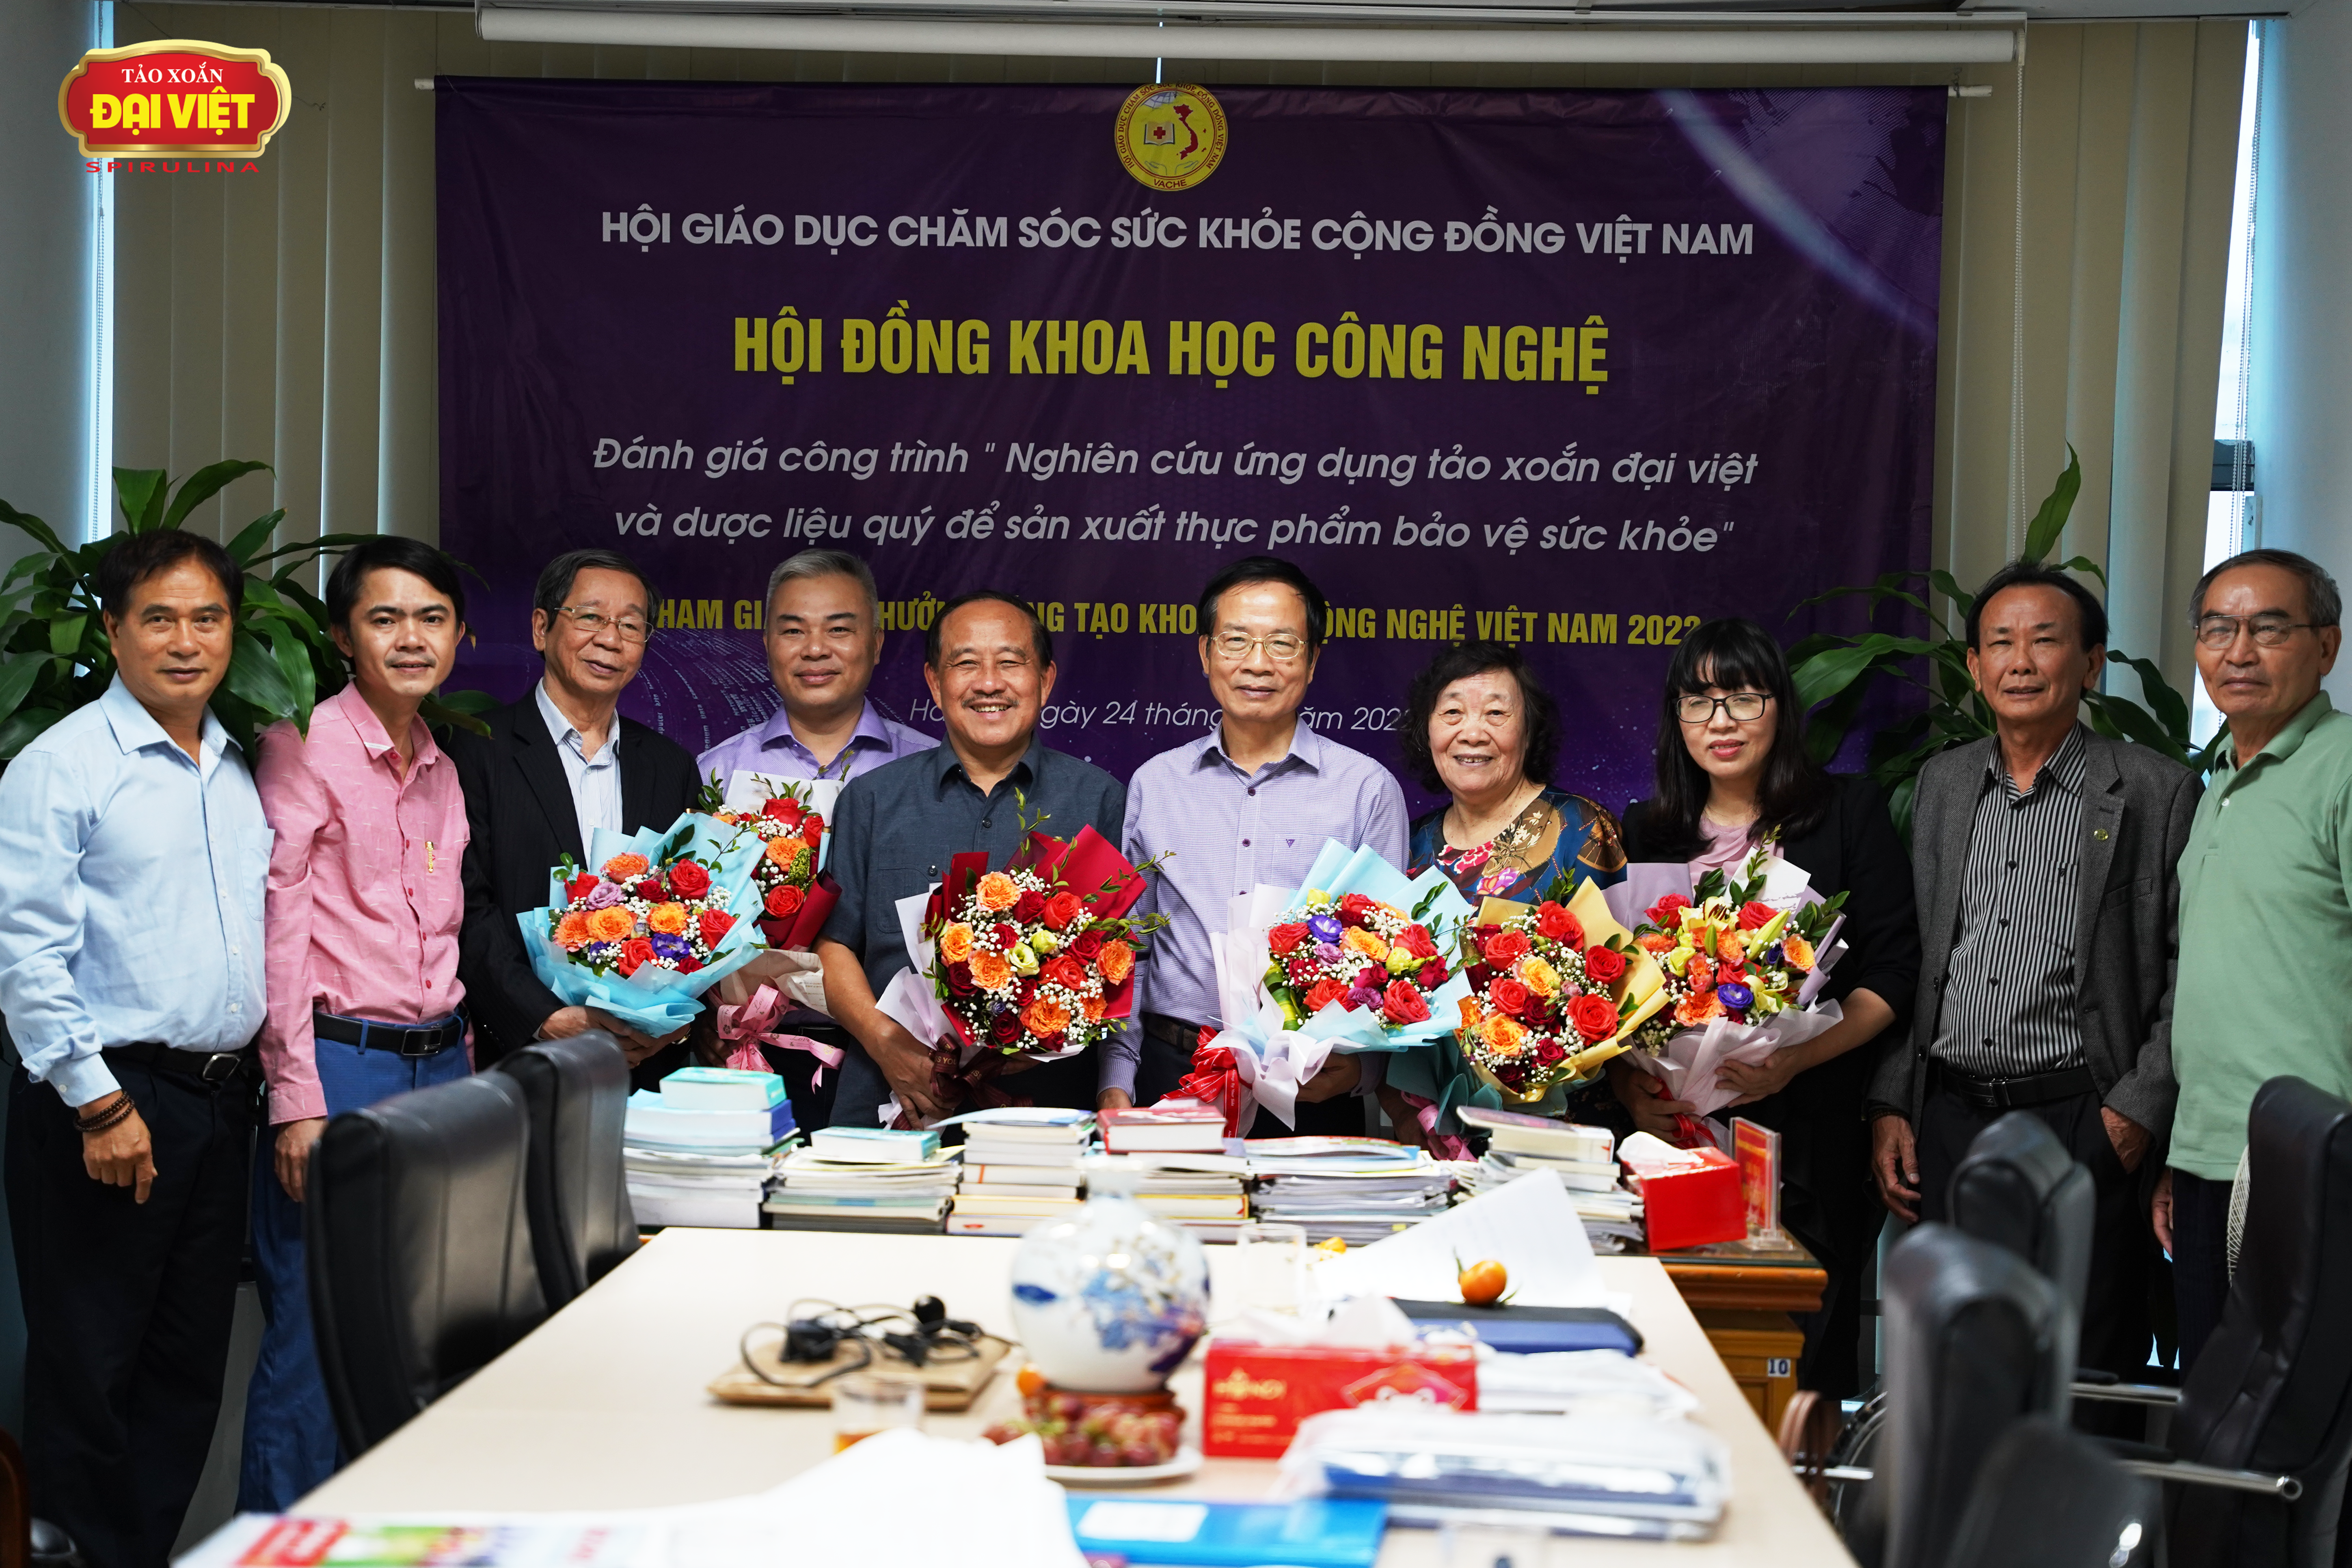 Hội đồng giám khảo và đại diện tập đoàn Tảo xoắn Đại Việt chụp hình lưu niệm sau cuộc họp.